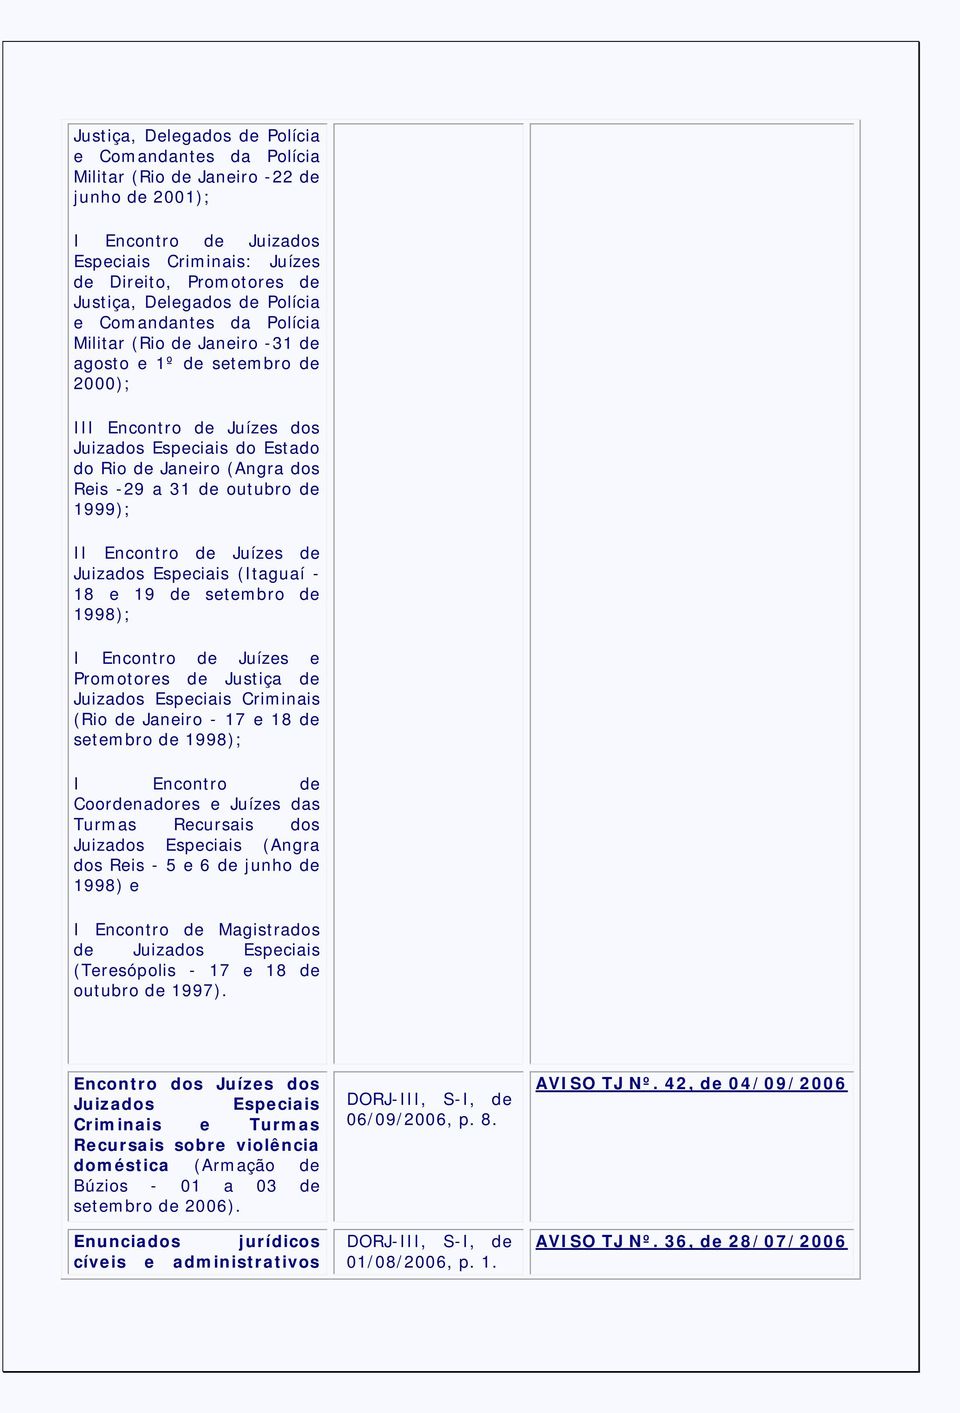 de outubro de 1999); II Encontro de Juízes de Juizados Especiais (Itaguaí - 18 e 19 de setembro de 1998); I Encontro de Juízes e Promotores de Justiça de Juizados Especiais Criminais (Rio de Janeiro